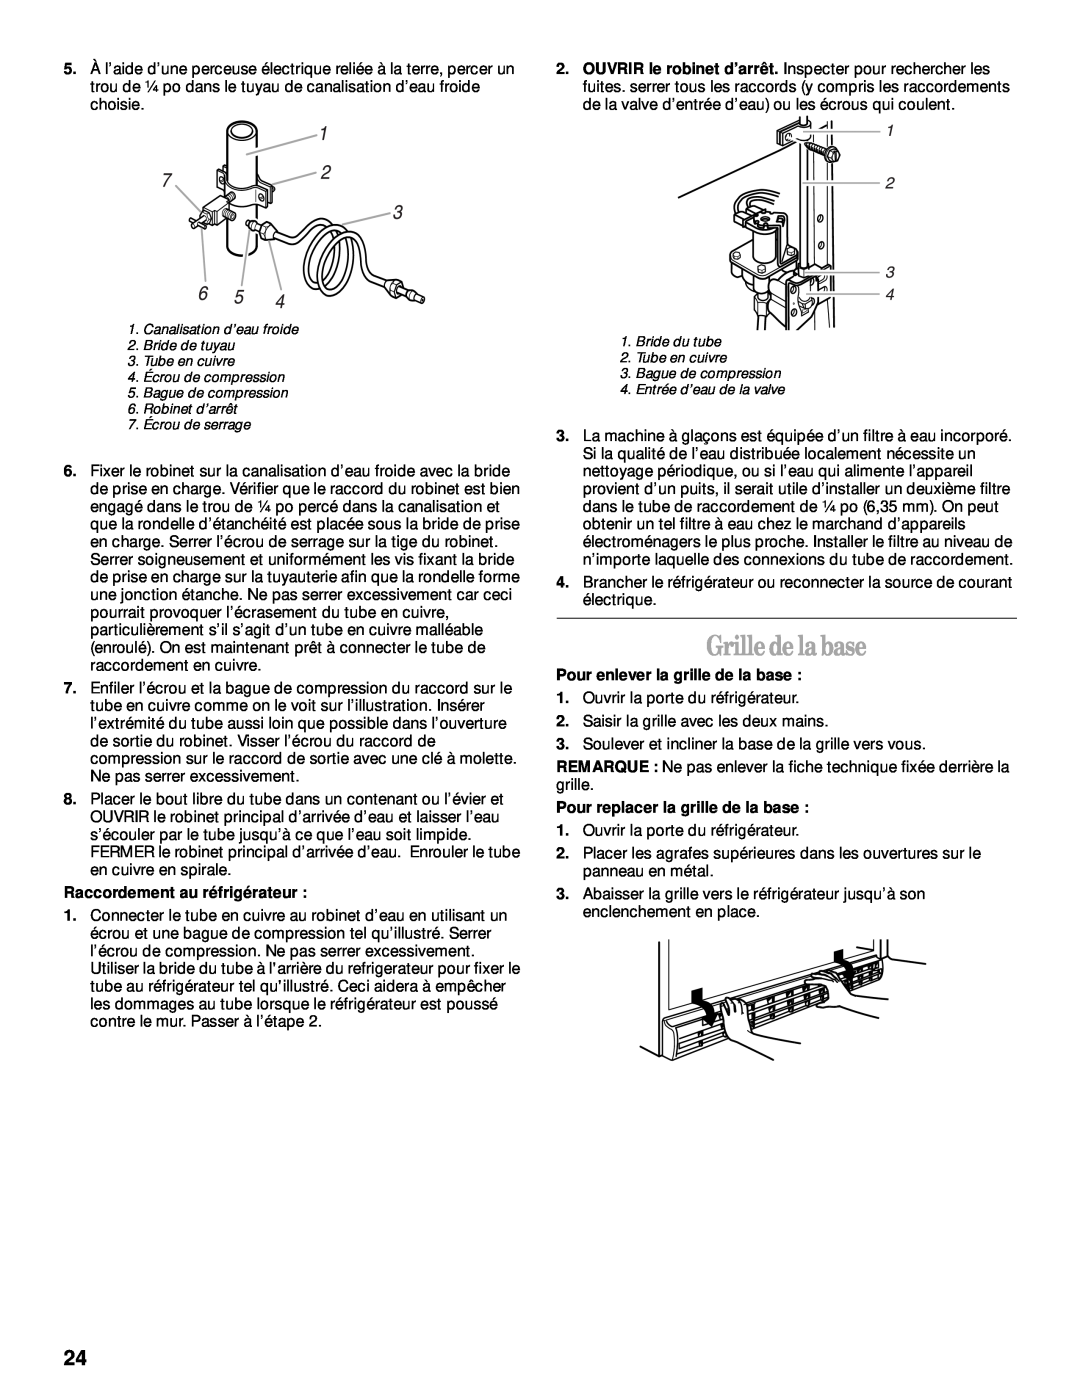 Whirlpool 2205266 manual Grille de la base, Raccordement au réfrigérateur, Pour enlever la grille de la base 